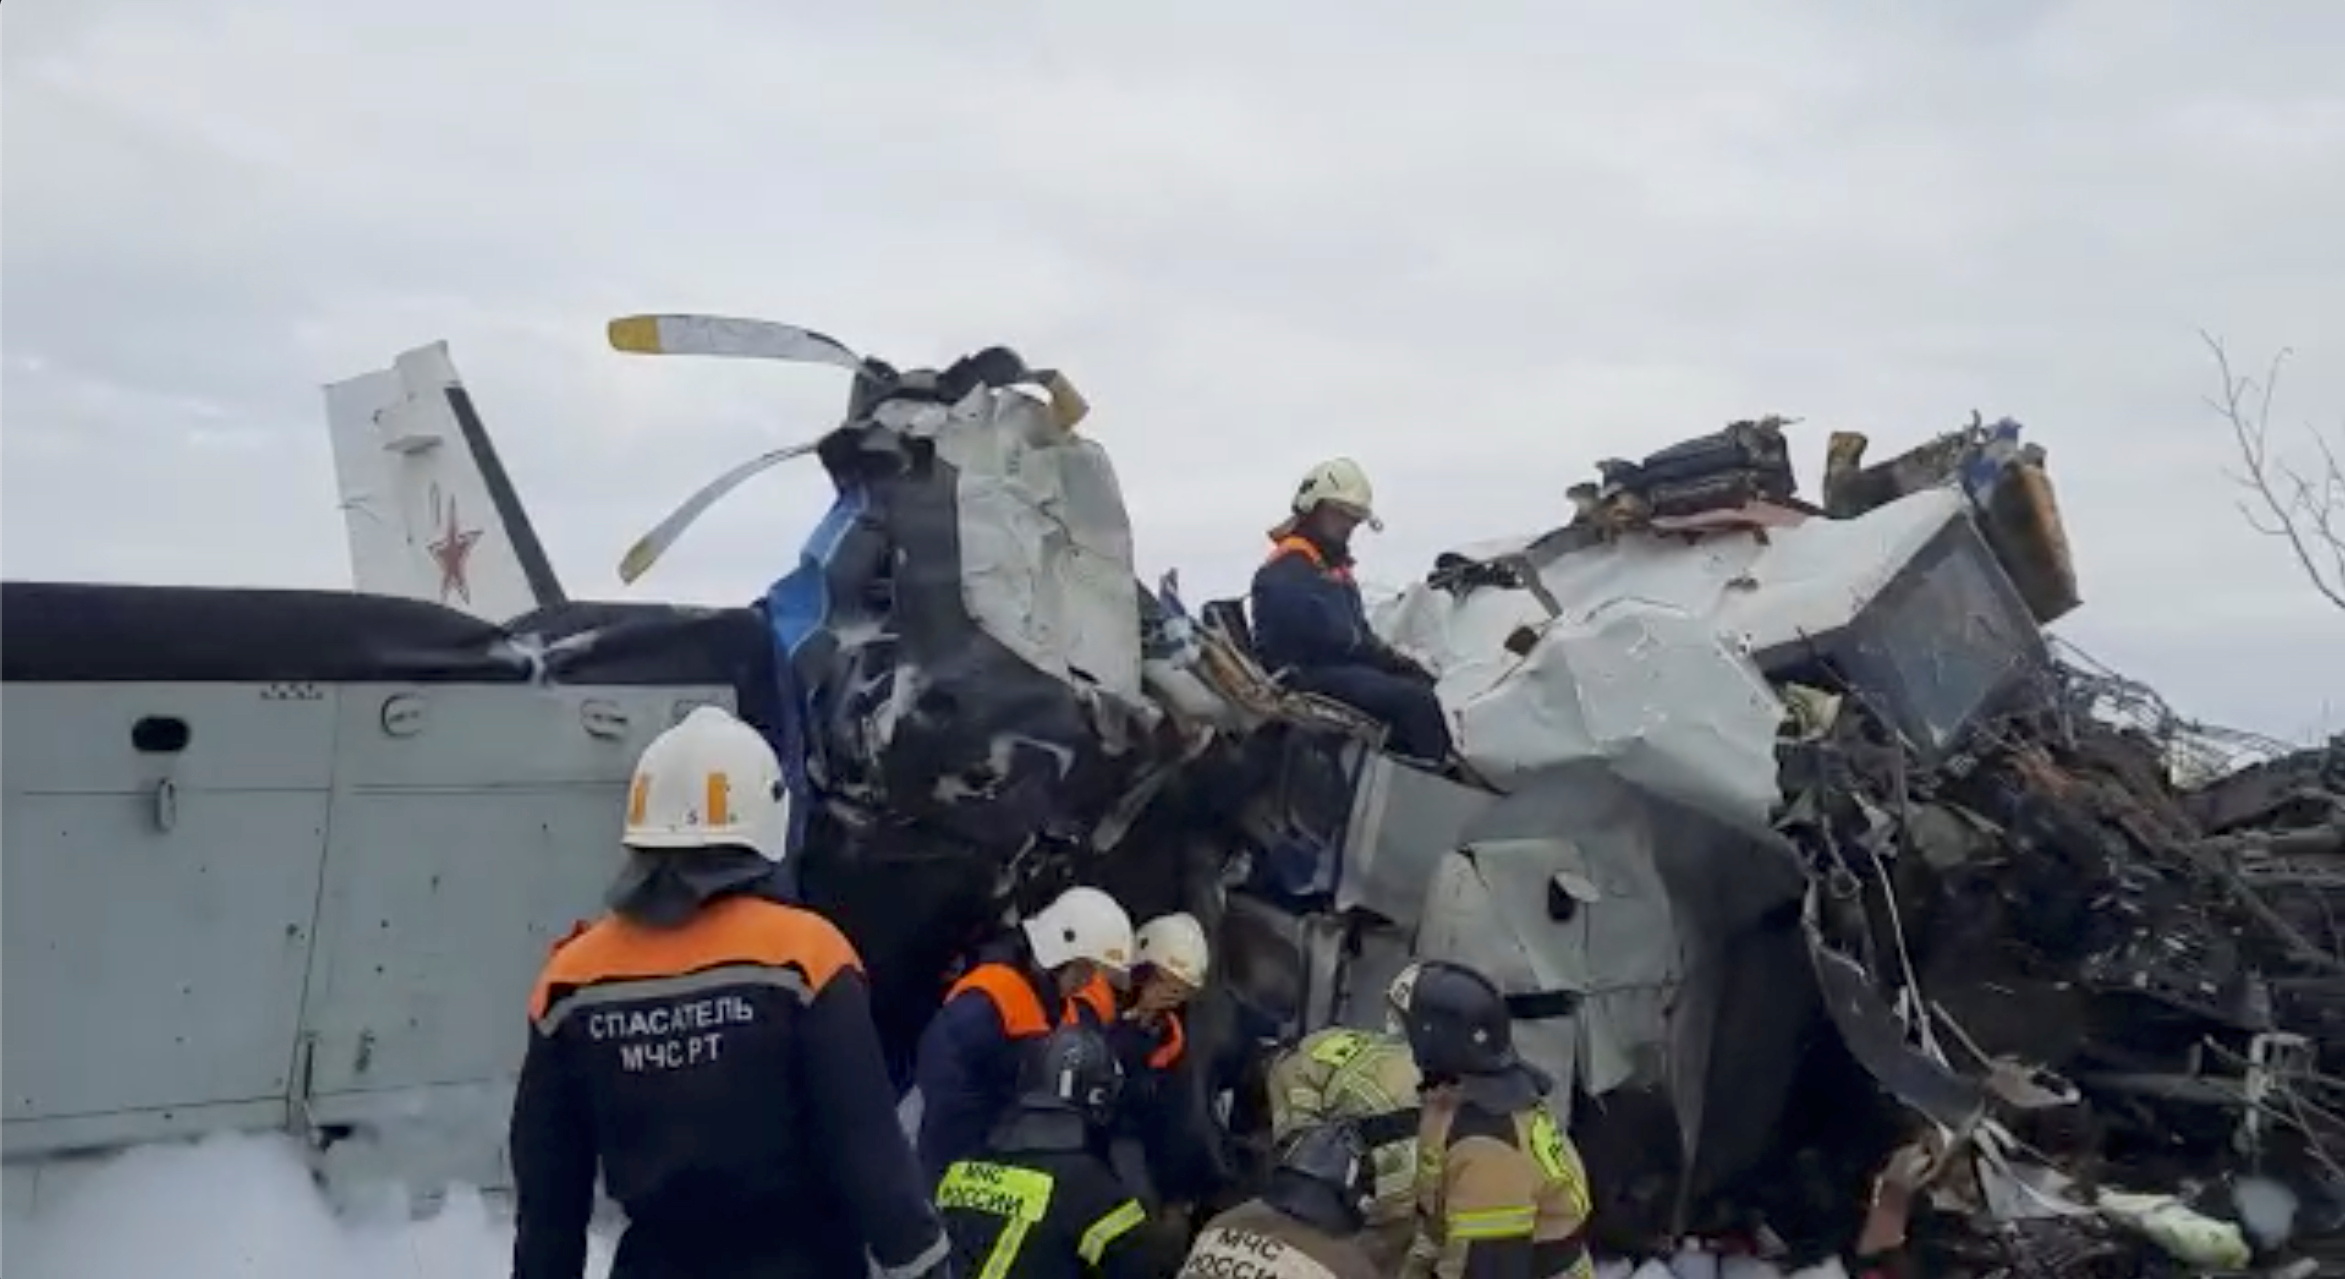 Trabajadores de emergencia en los restos de un avión L-410 en el sitio donde se estrelló, en la ciudad rusa de Menzelinsk. (Foto Prensa Libre: REUTERS)